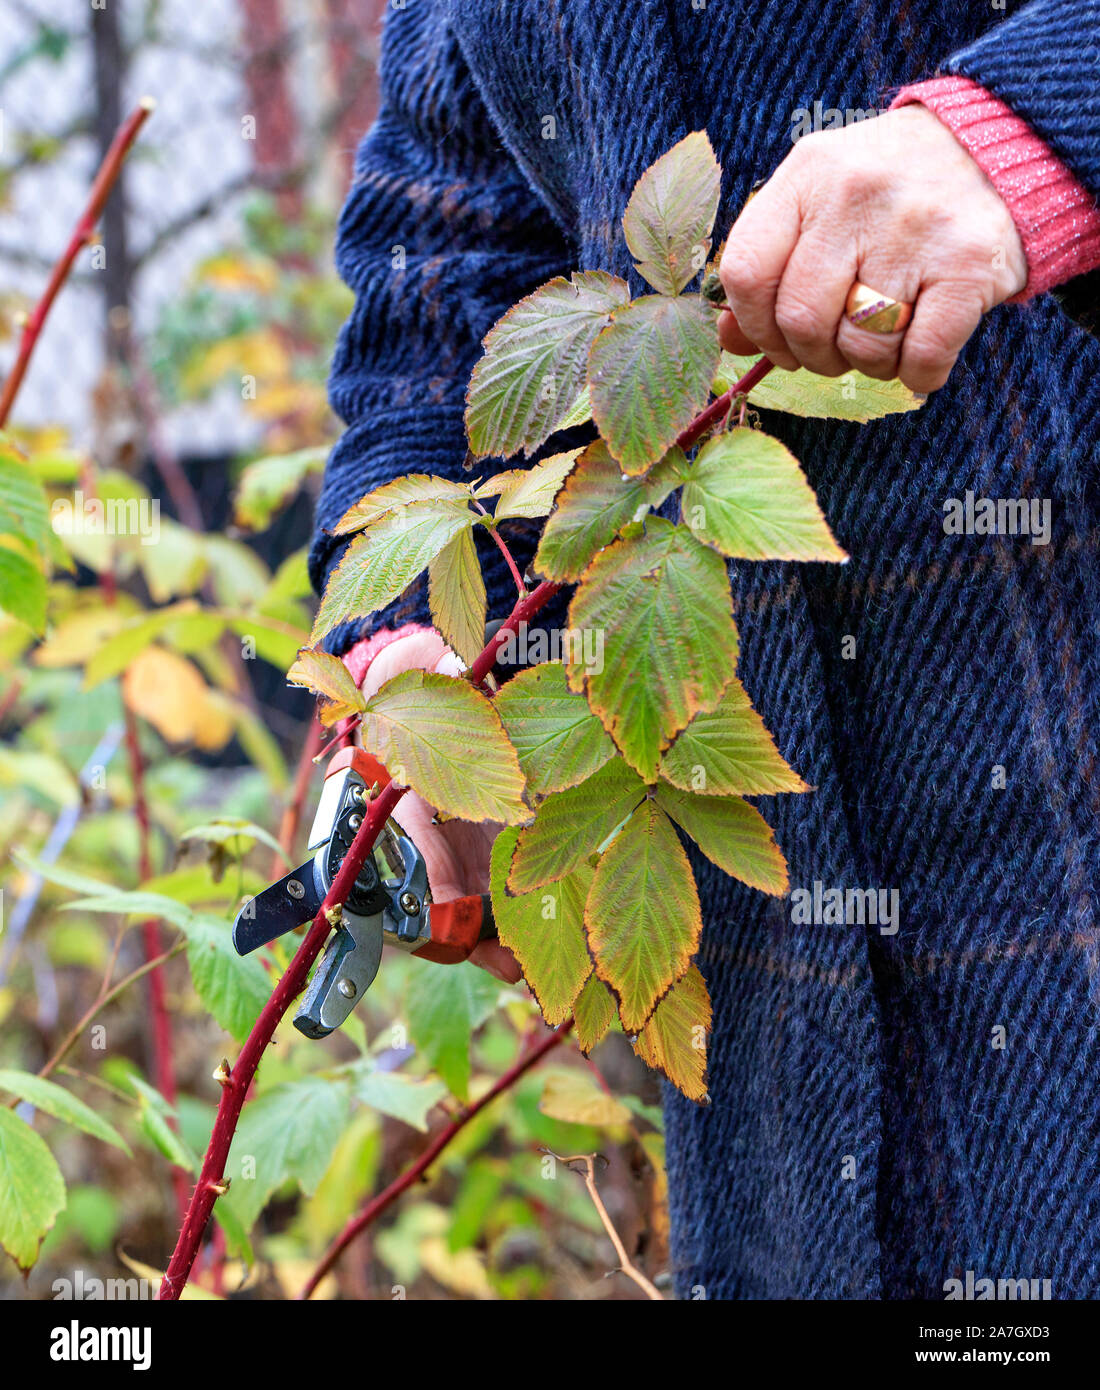 Jardinero con un jardín podador cortes y rejuvenece frambuesa bush en un jardín de otoño para obtener una buena cosecha el año próximo, con copia espacio vertical de la imagen. Foto de stock